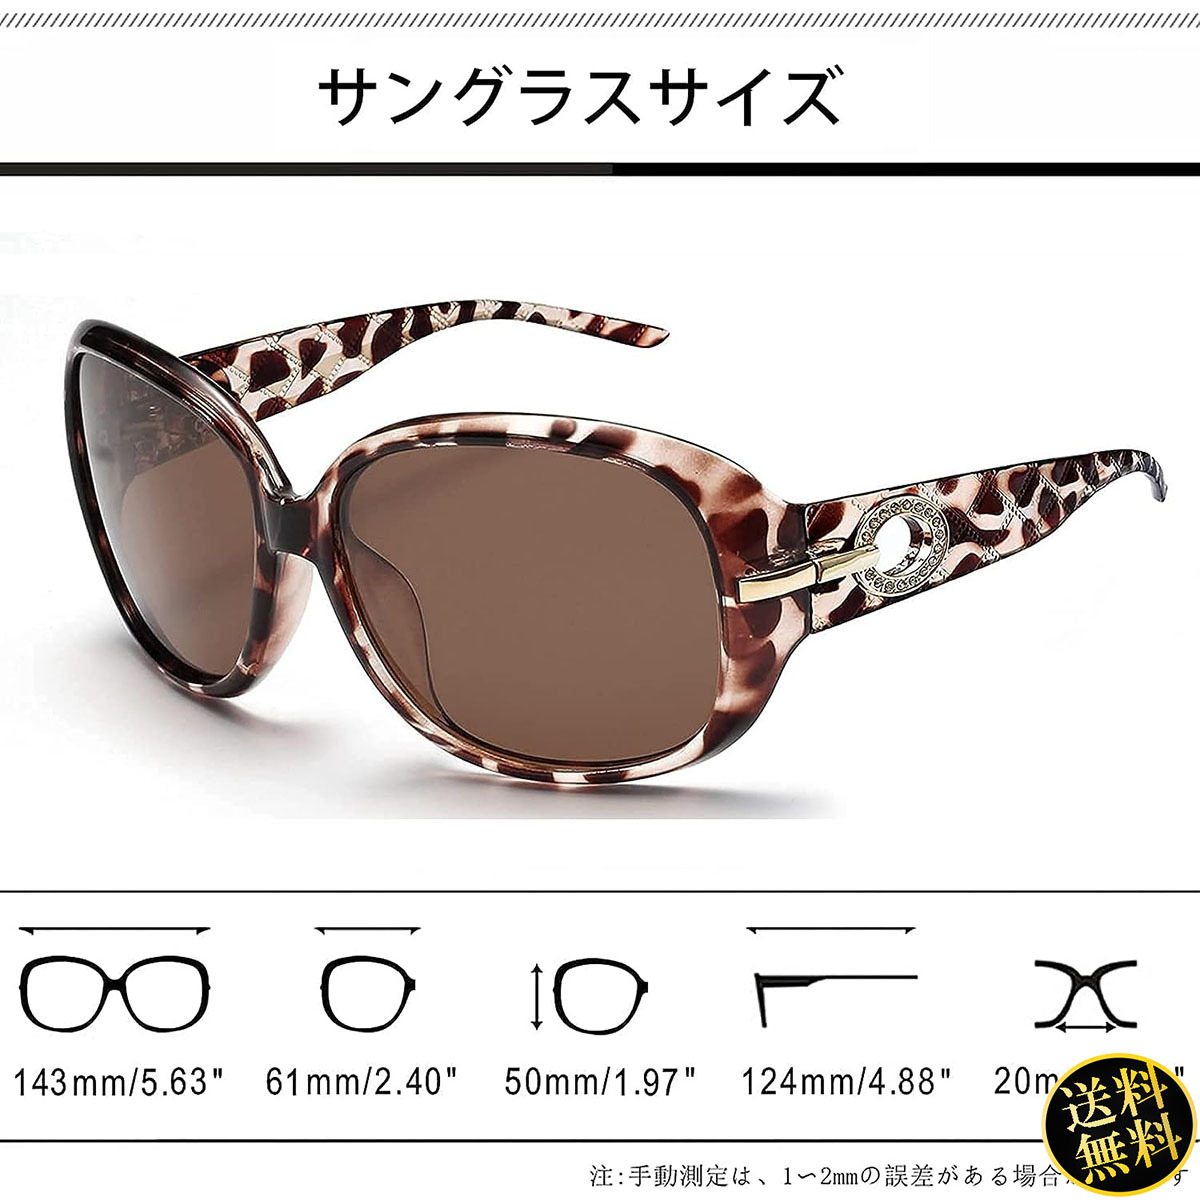 【個性的でエレガント】 サングラス レオパード柄 偏光レンズ UV400カット ラインストーン ファッション レディース 日本人顔設計